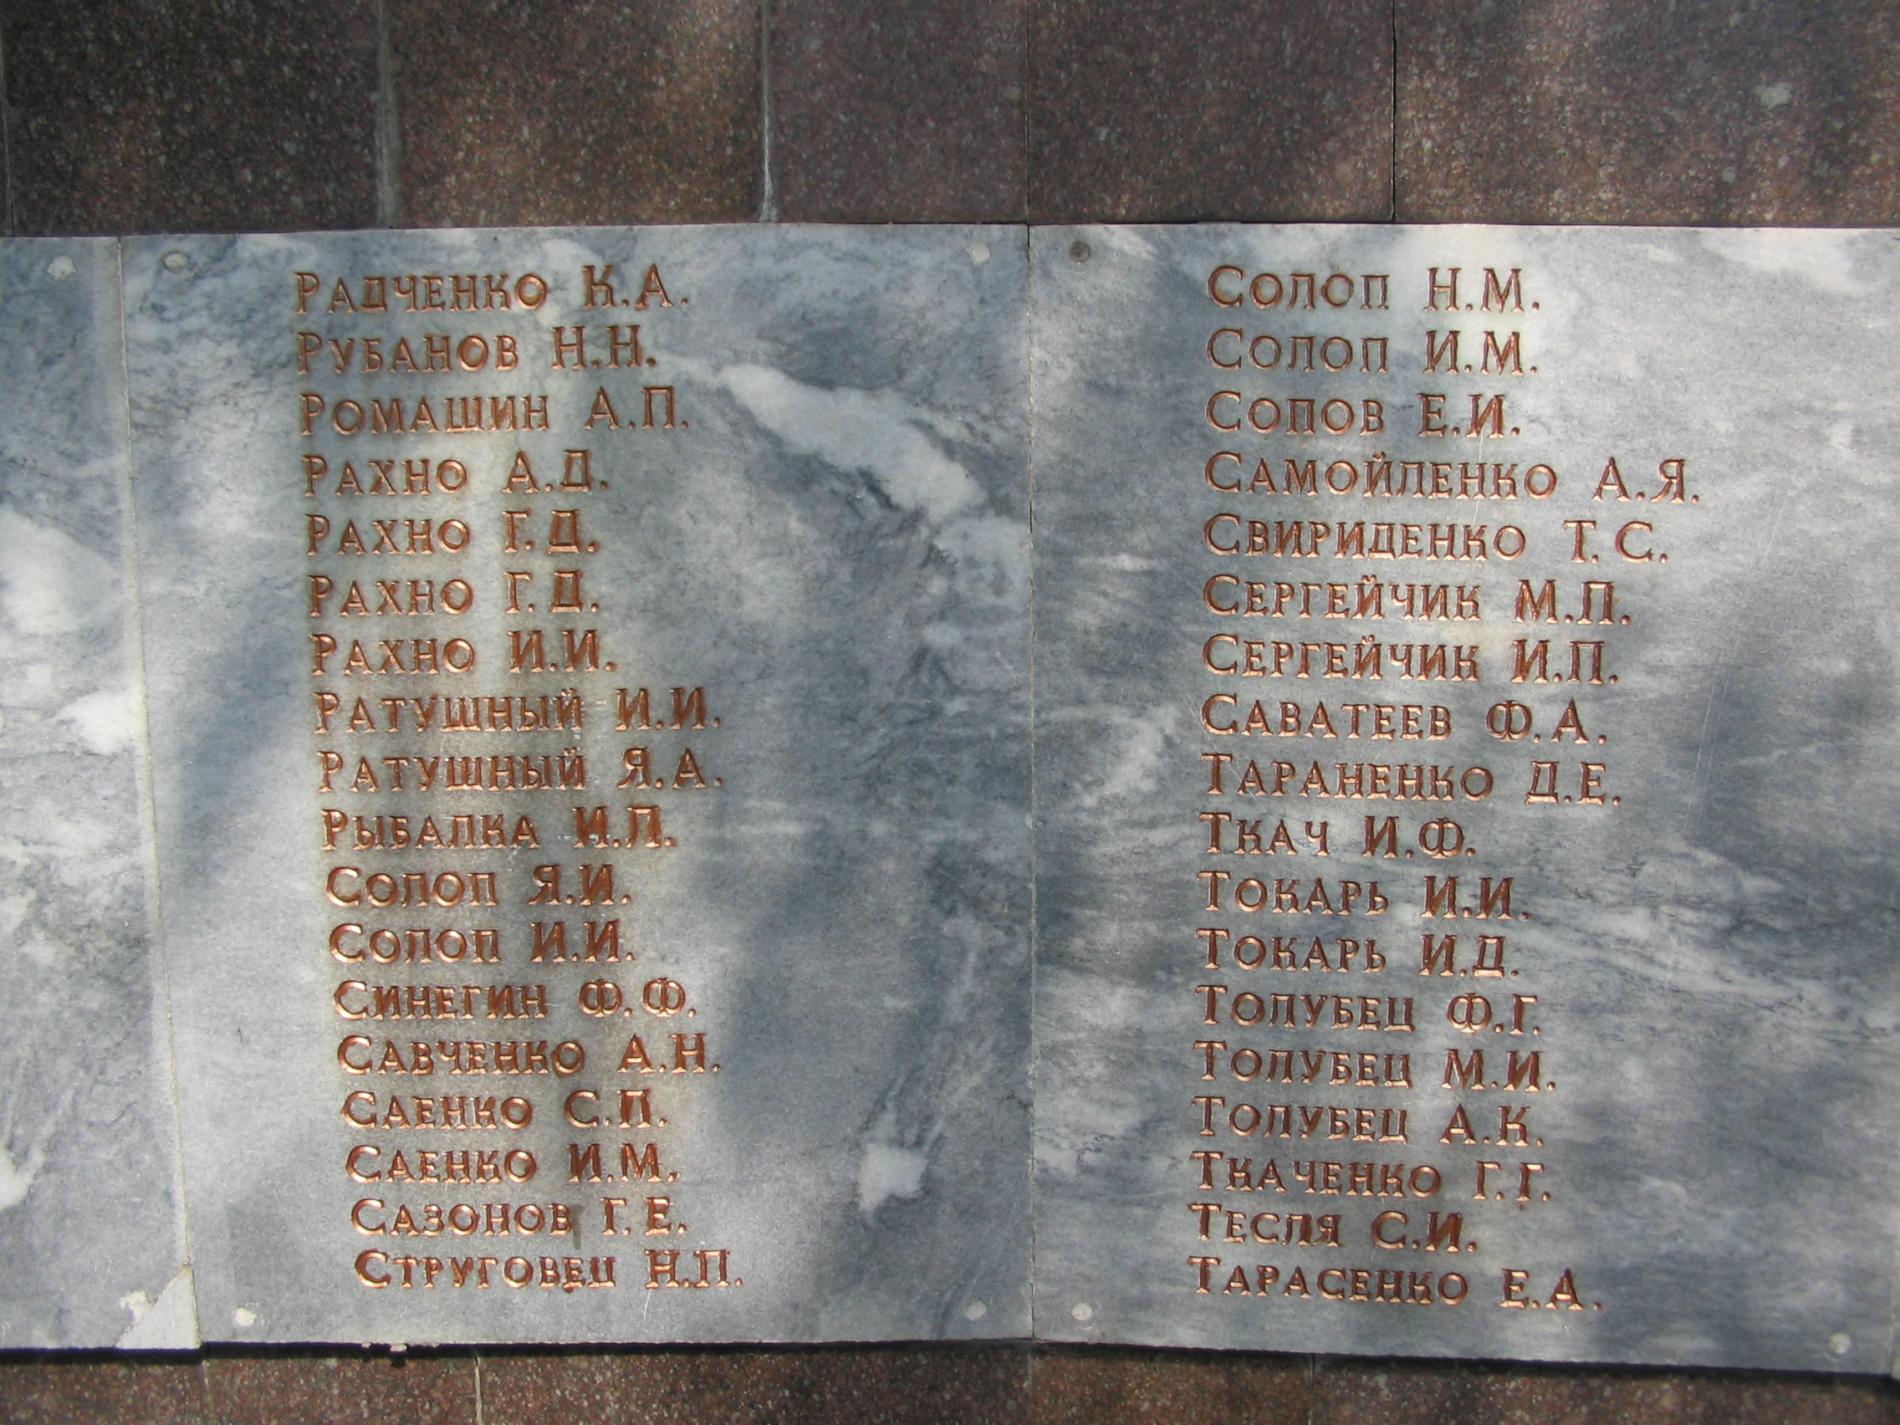 Памятник воинам-землякам в центральном парке пгт. Васильковка